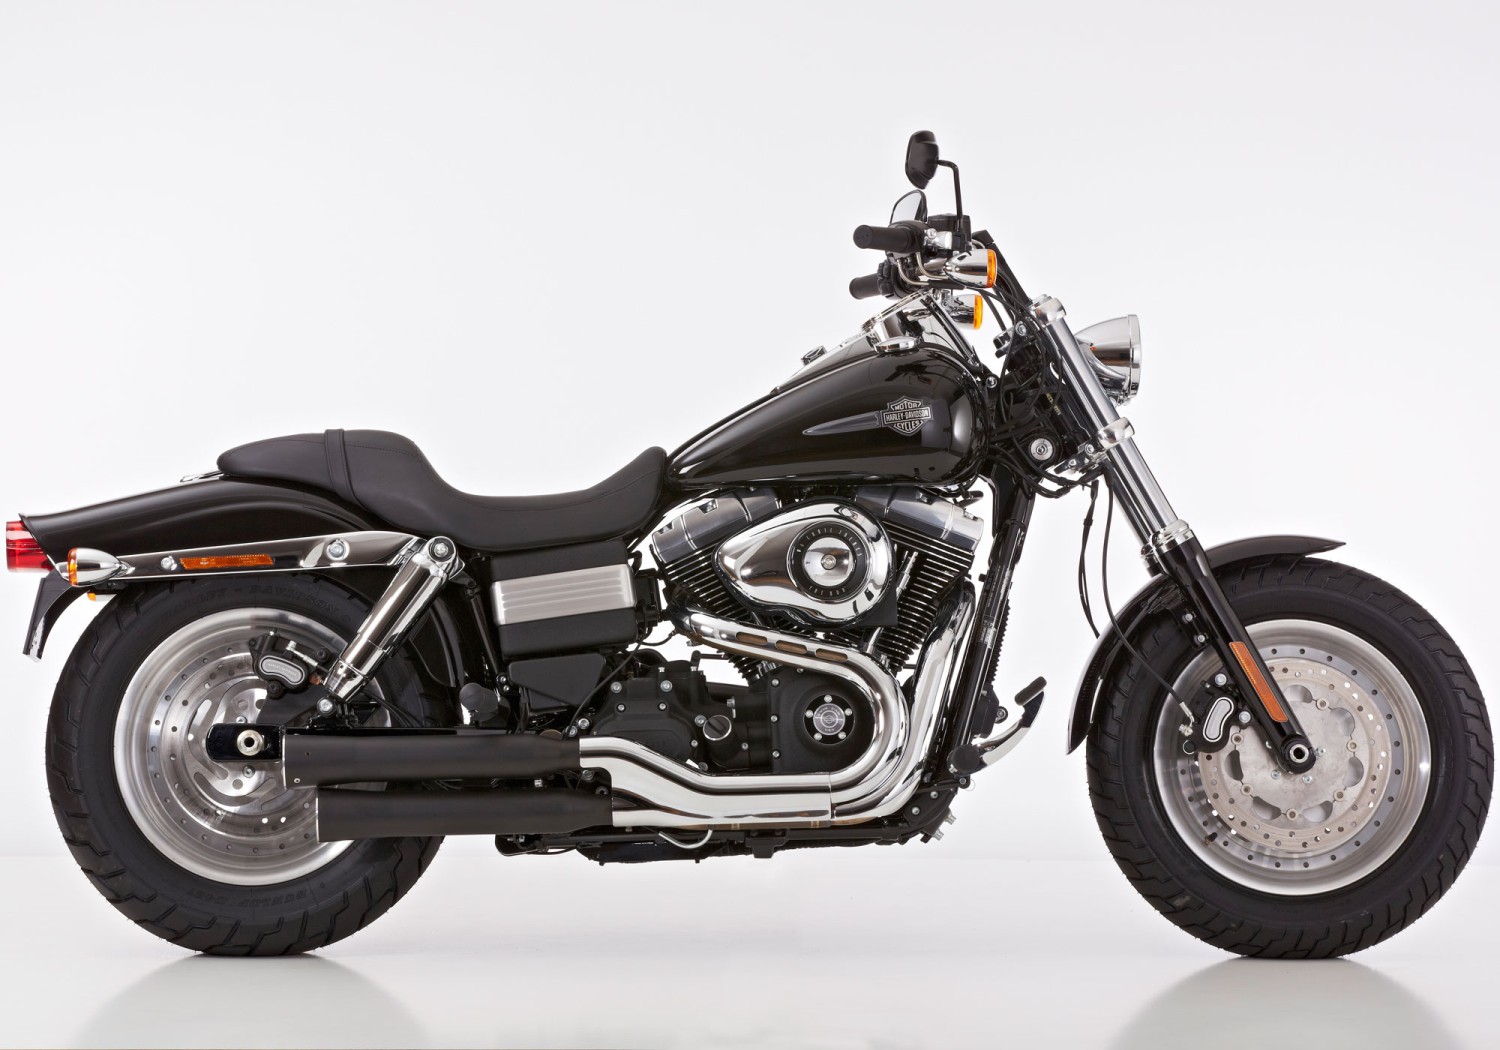  Harley Davidson Dyna Fat Bob, Bj. 2008-2012 